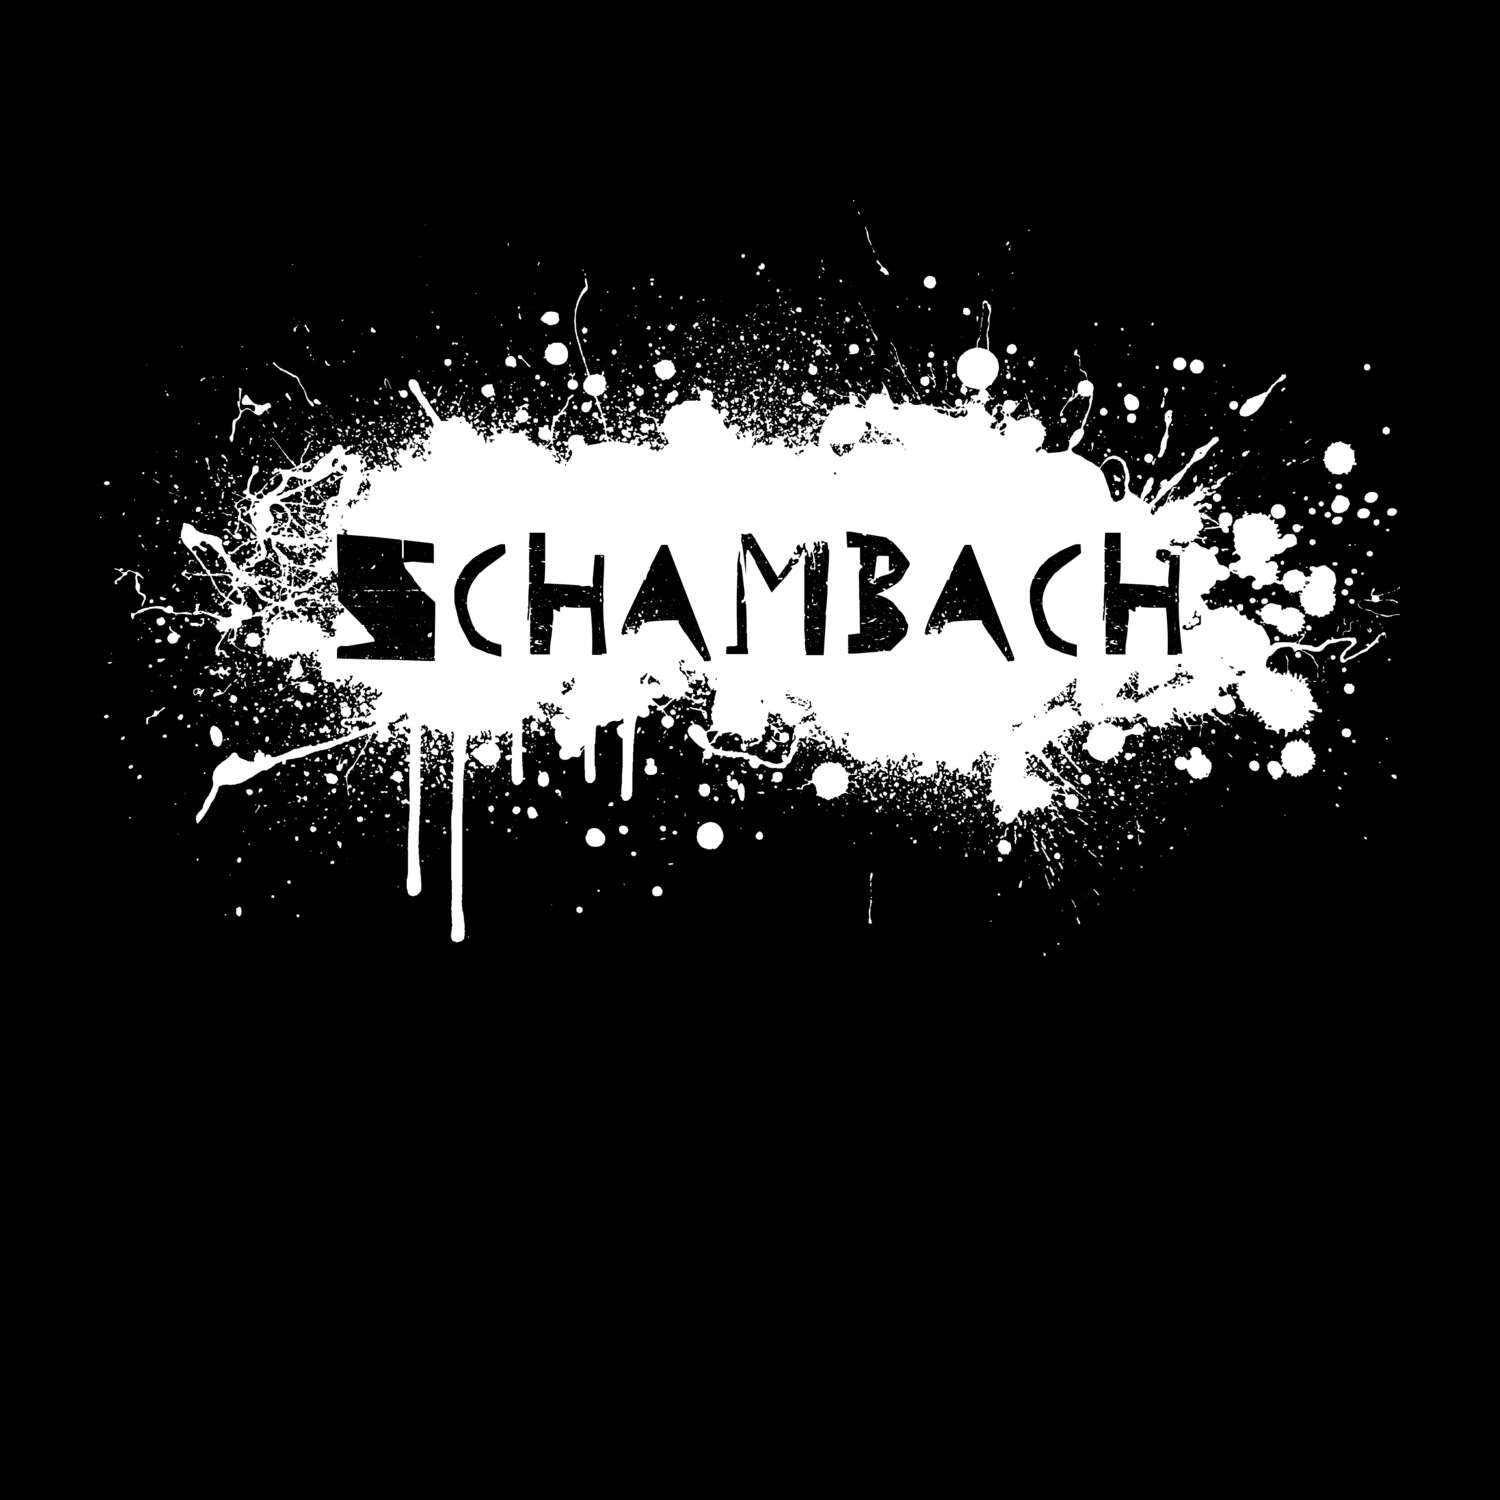 Schambach T-Shirt »Paint Splash Punk«